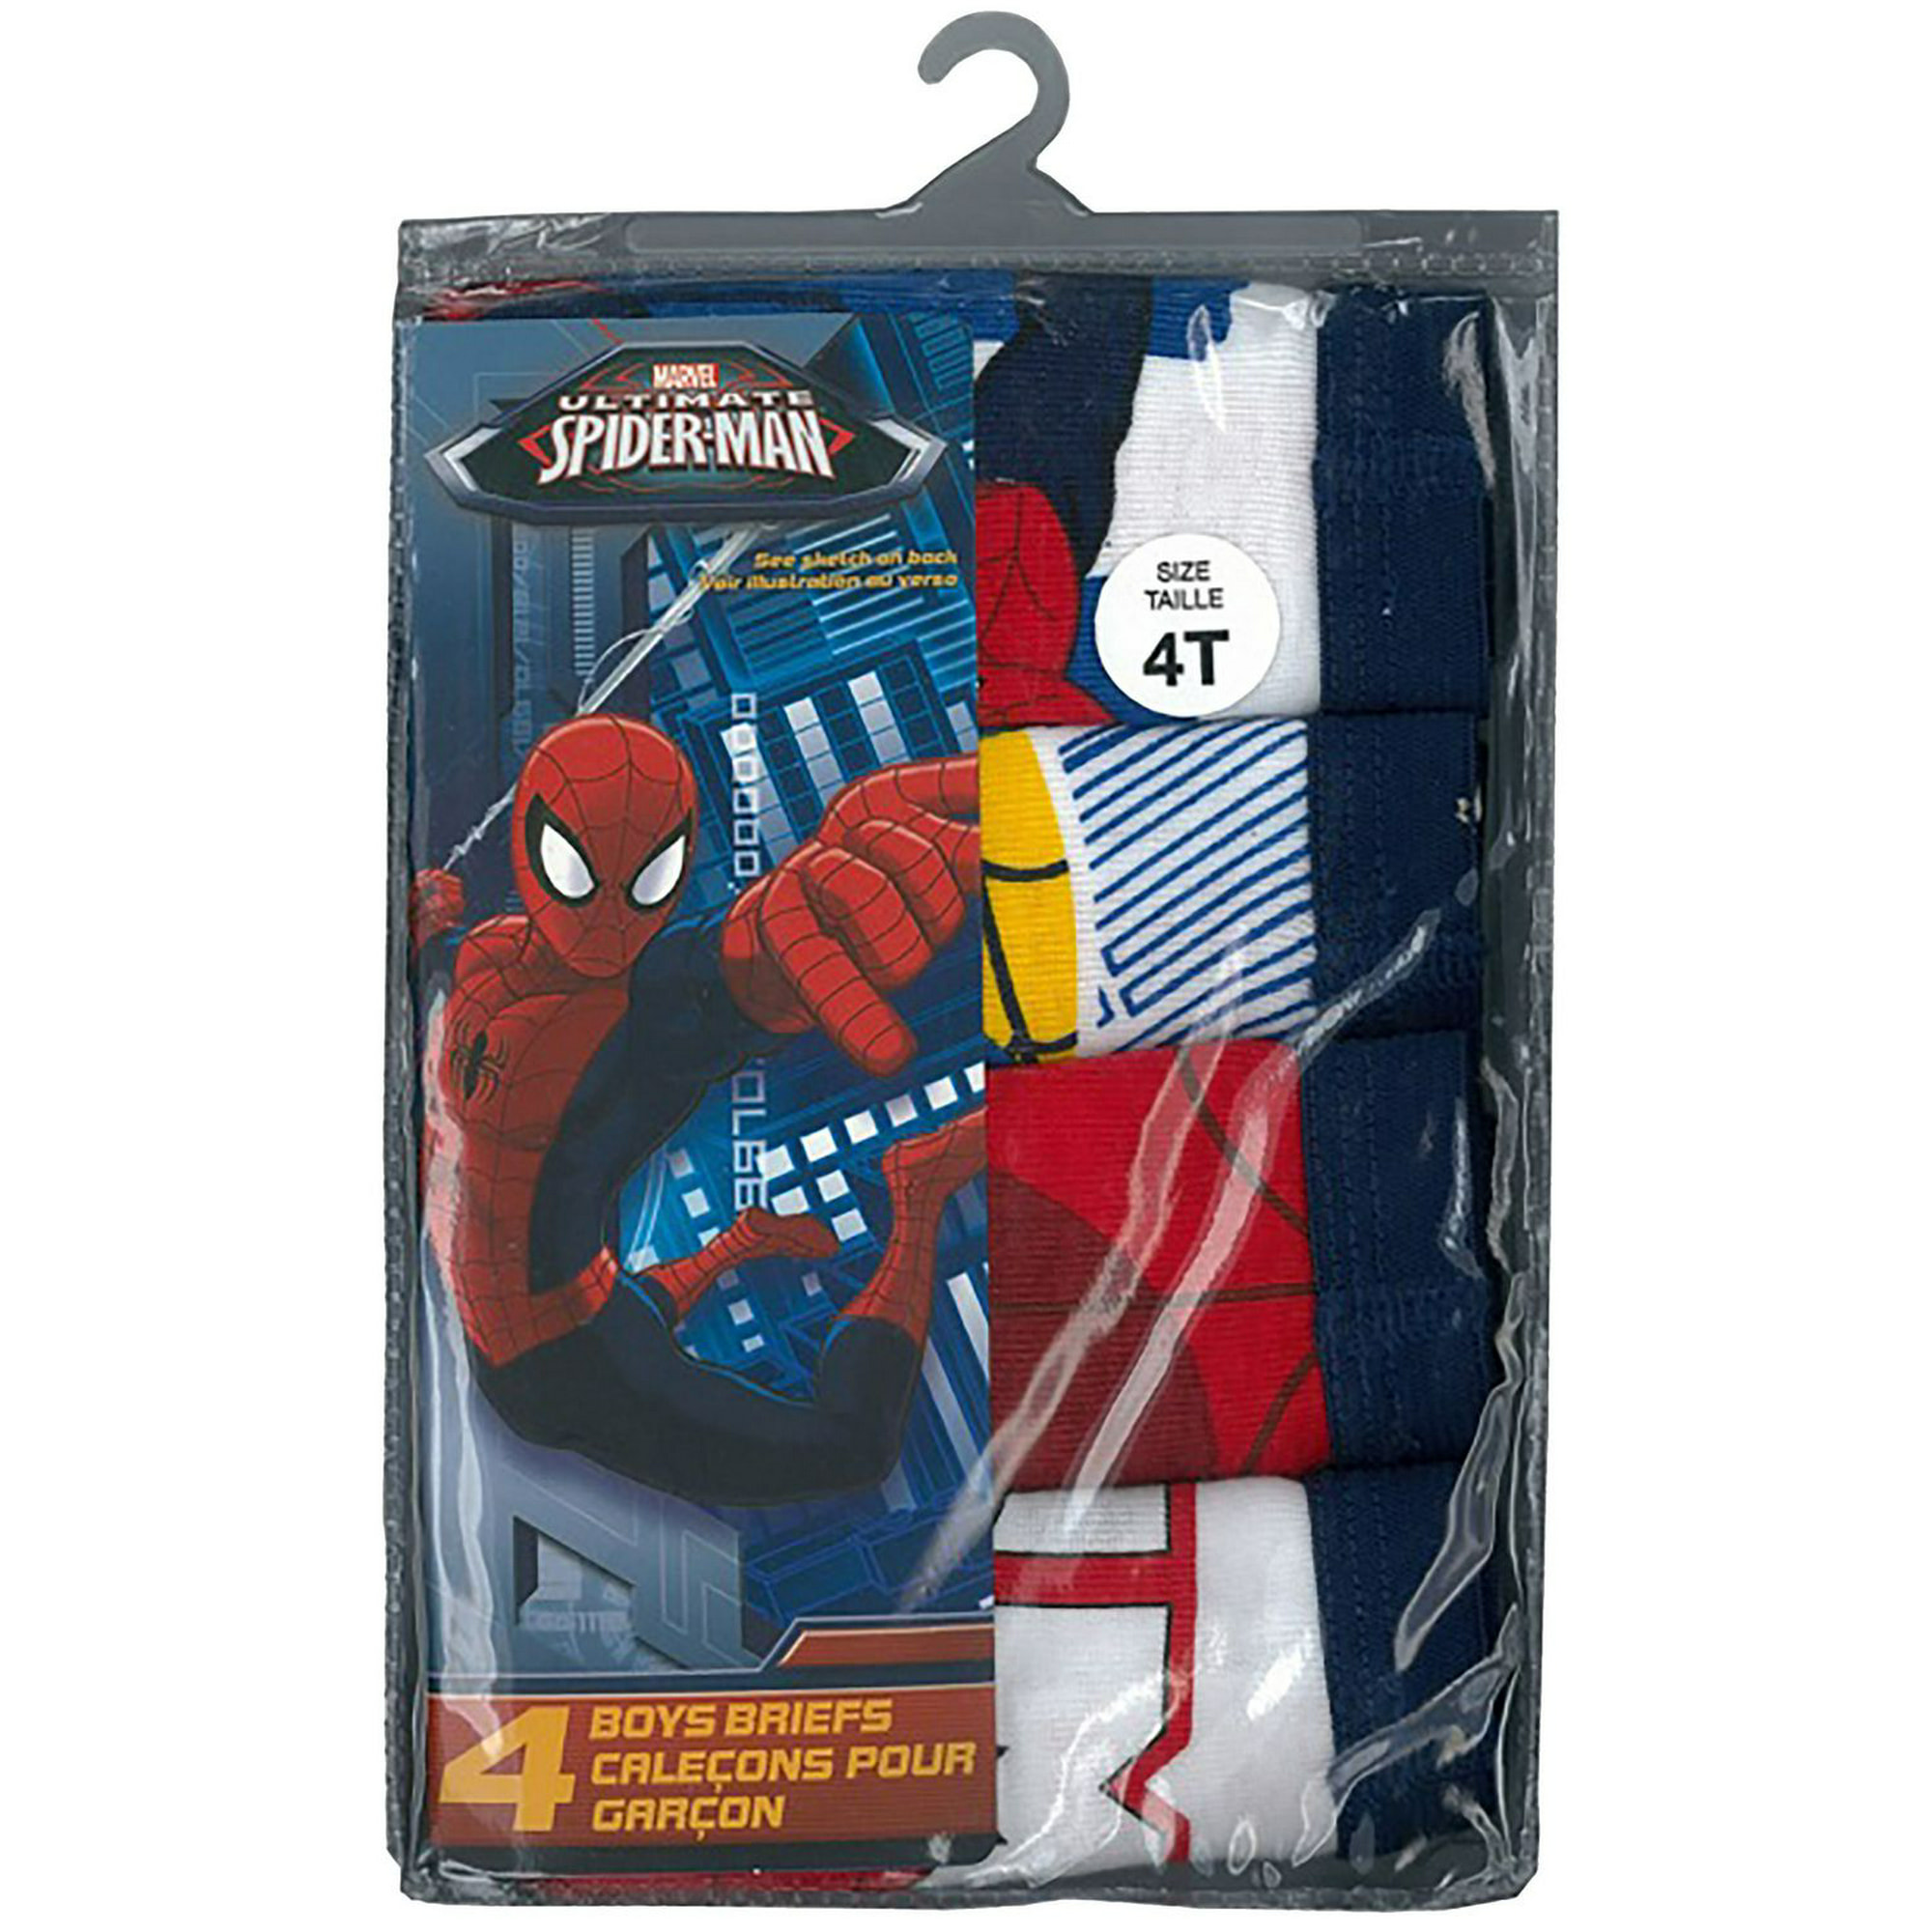 Spiderman Striped Toddler Boys Underwear Briefs Five Pair Size 2T/3T NEW